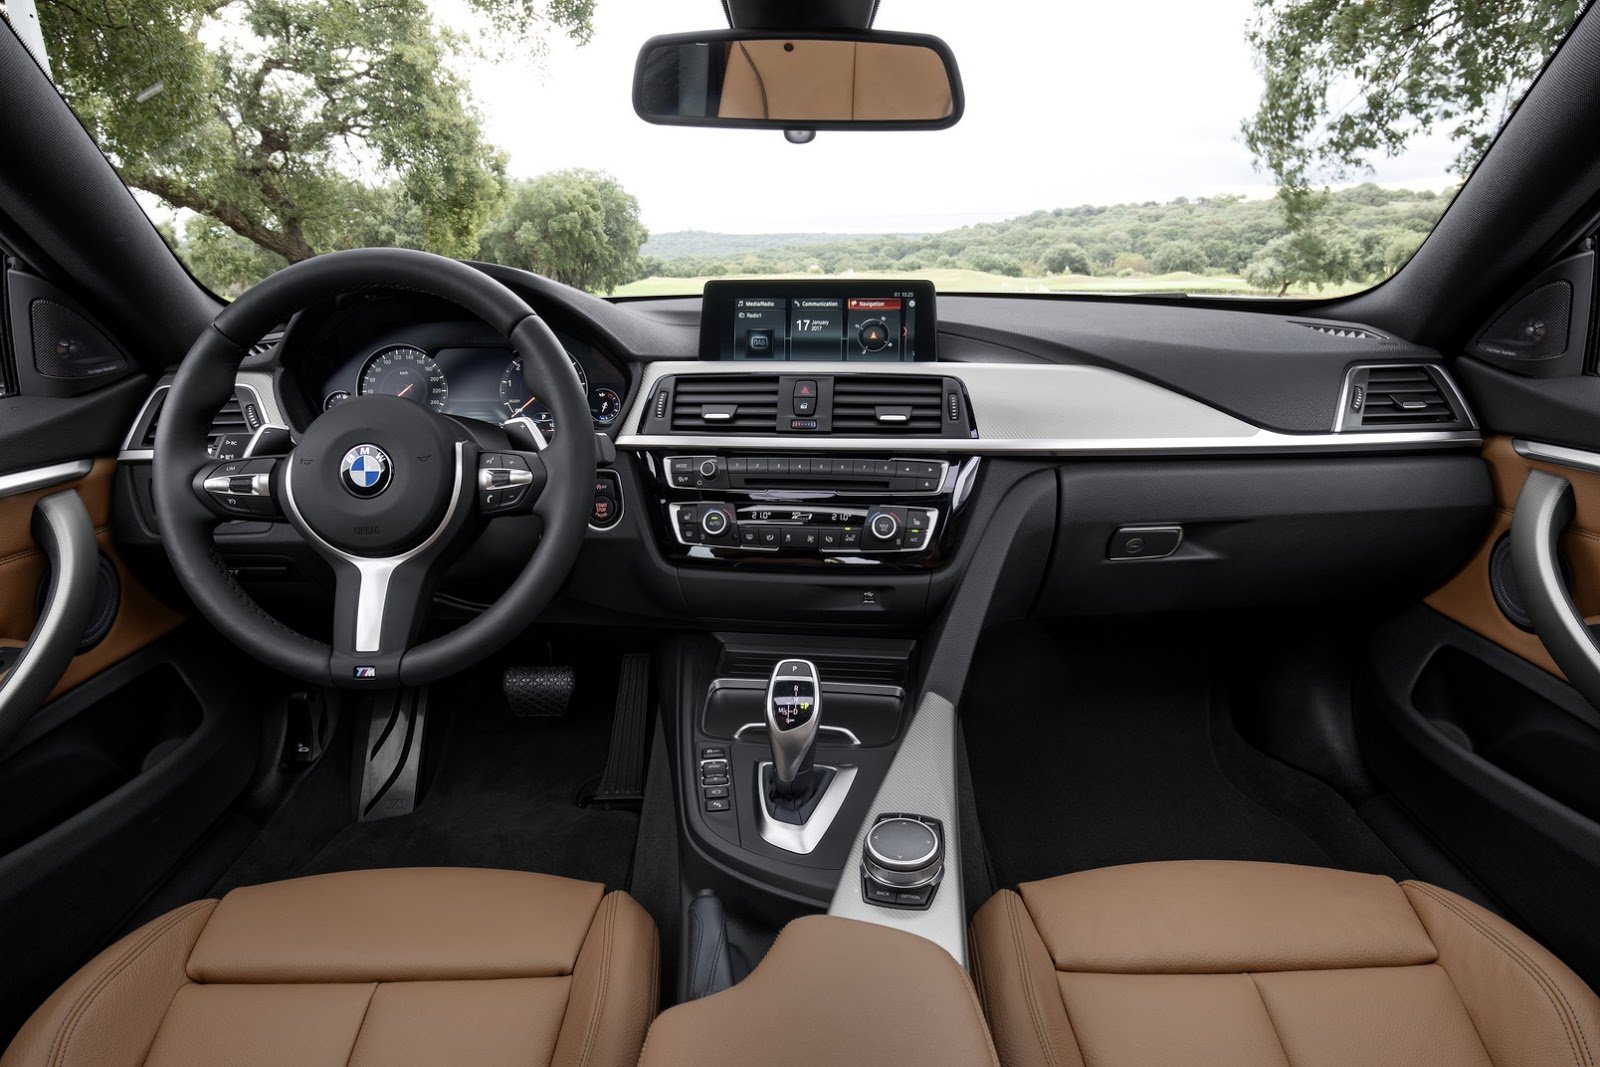 BMW řady 4 dostalo například nová LED světla a upravený interiér.